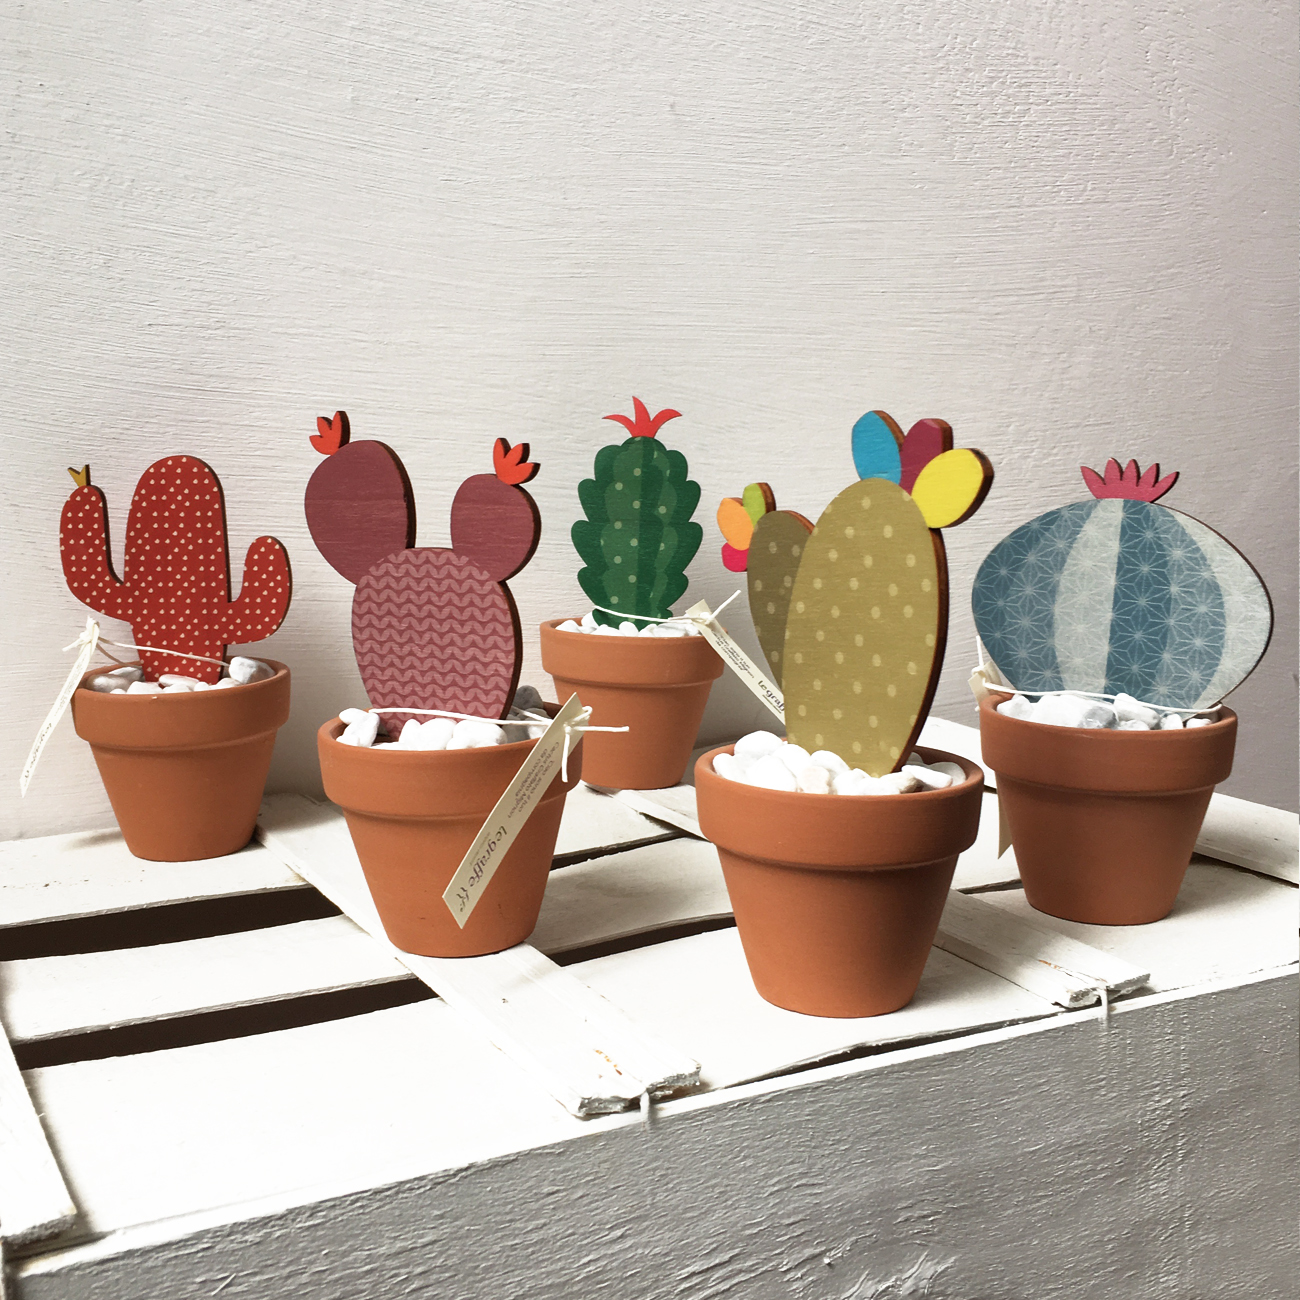 Cactus misti in legno, ideali come bomboniere e originali oggetti di arredo  - cactus vaso H14 - Le Graffe shop